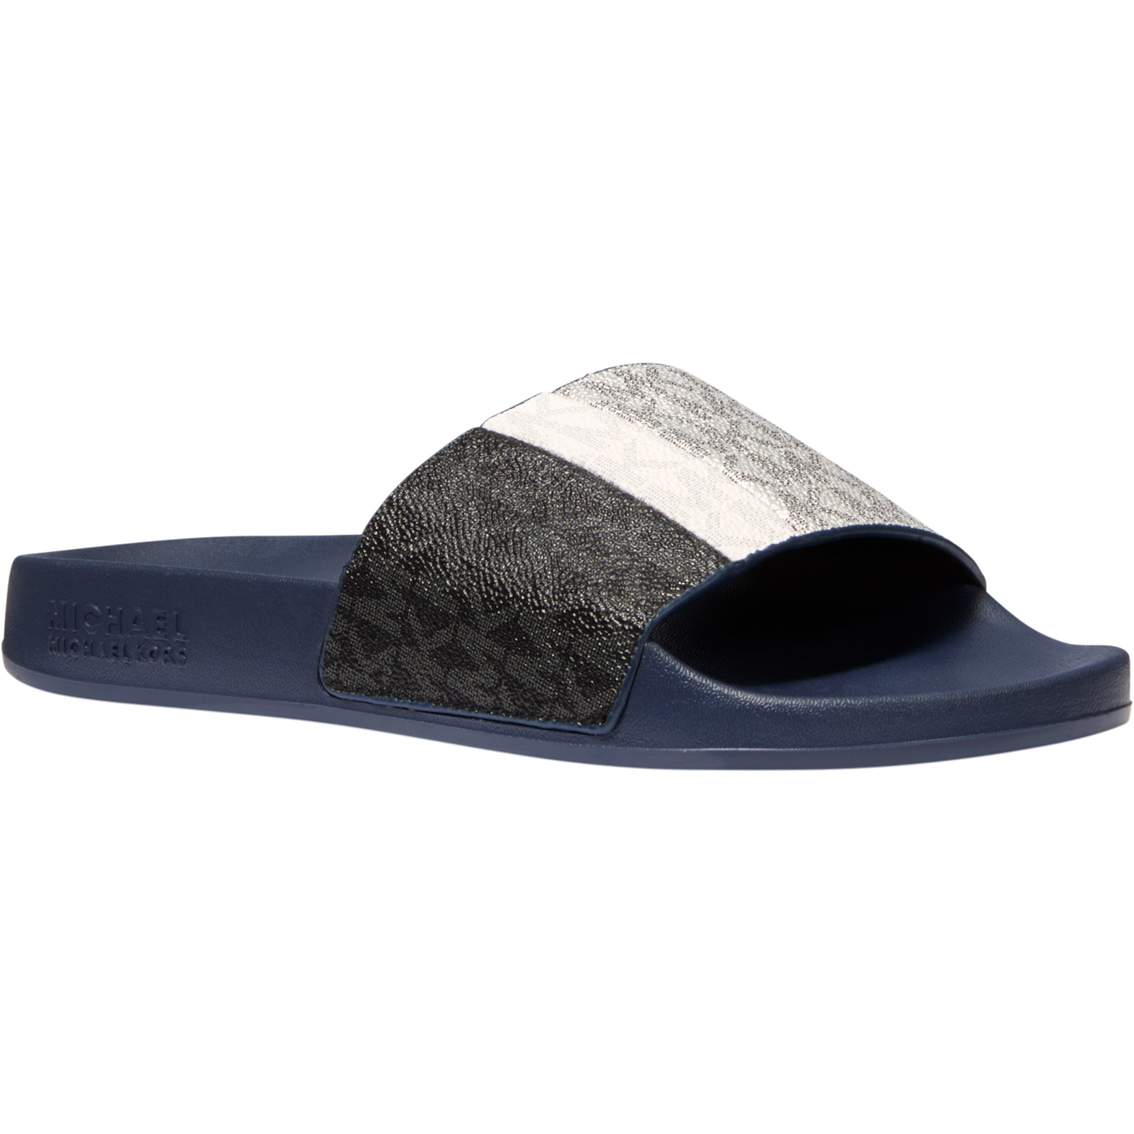 Michael Kors Women's Ayla Slide Sandals 